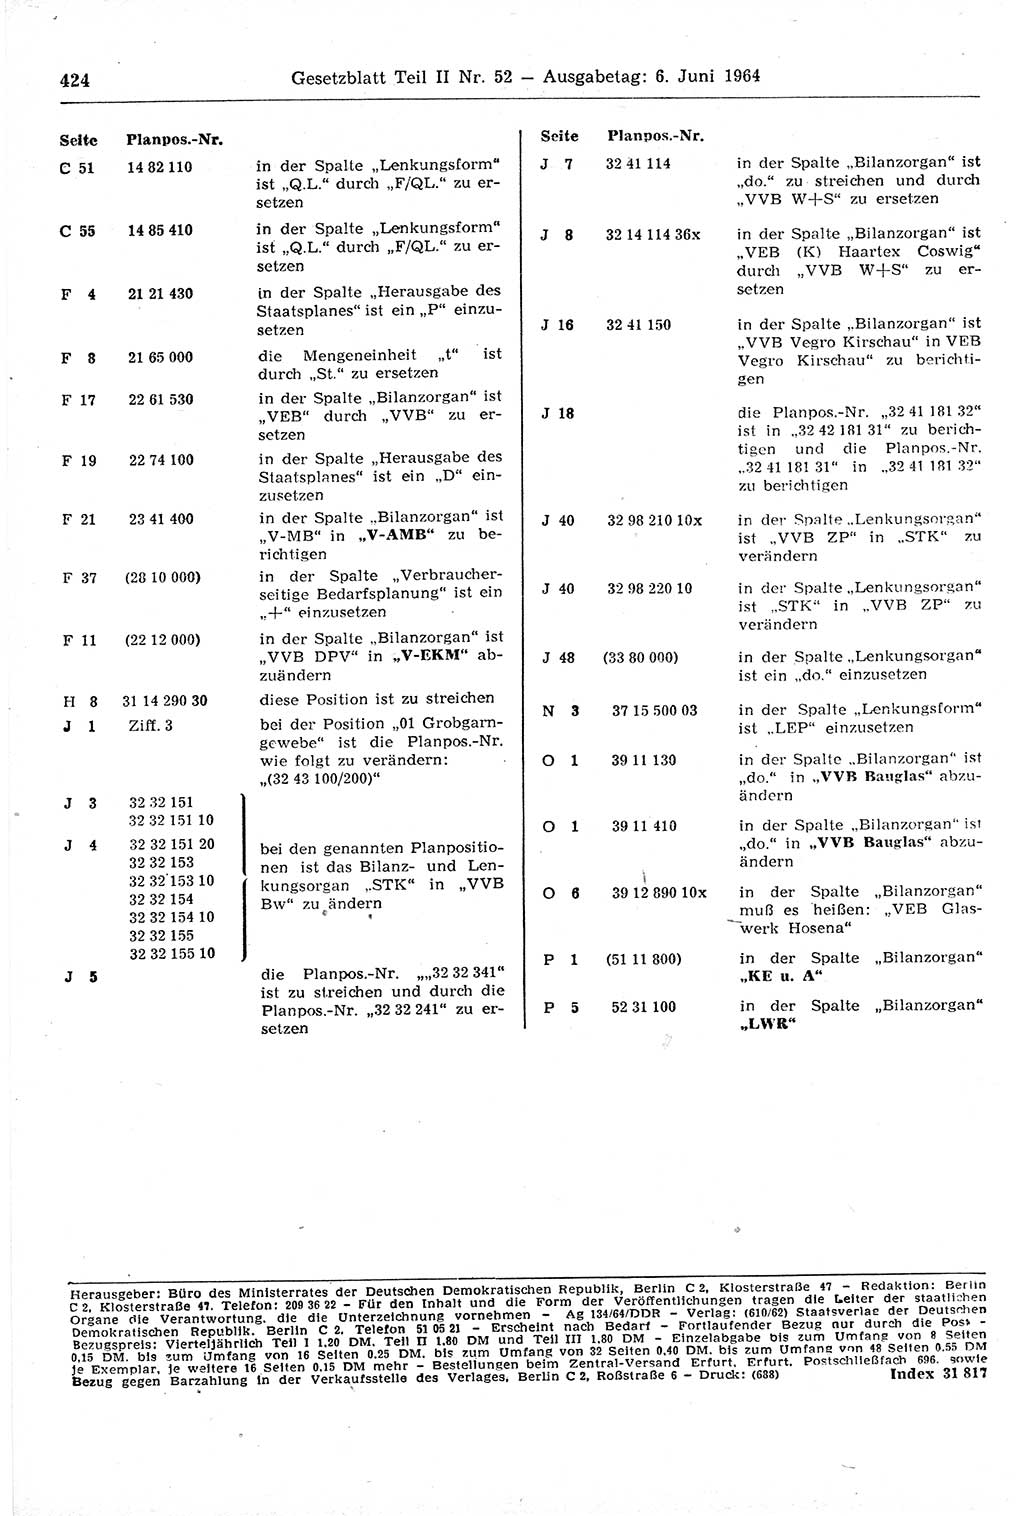 Gesetzblatt (GBl.) der Deutschen Demokratischen Republik (DDR) Teil ⅠⅠ 1964, Seite 424 (GBl. DDR ⅠⅠ 1964, S. 424)